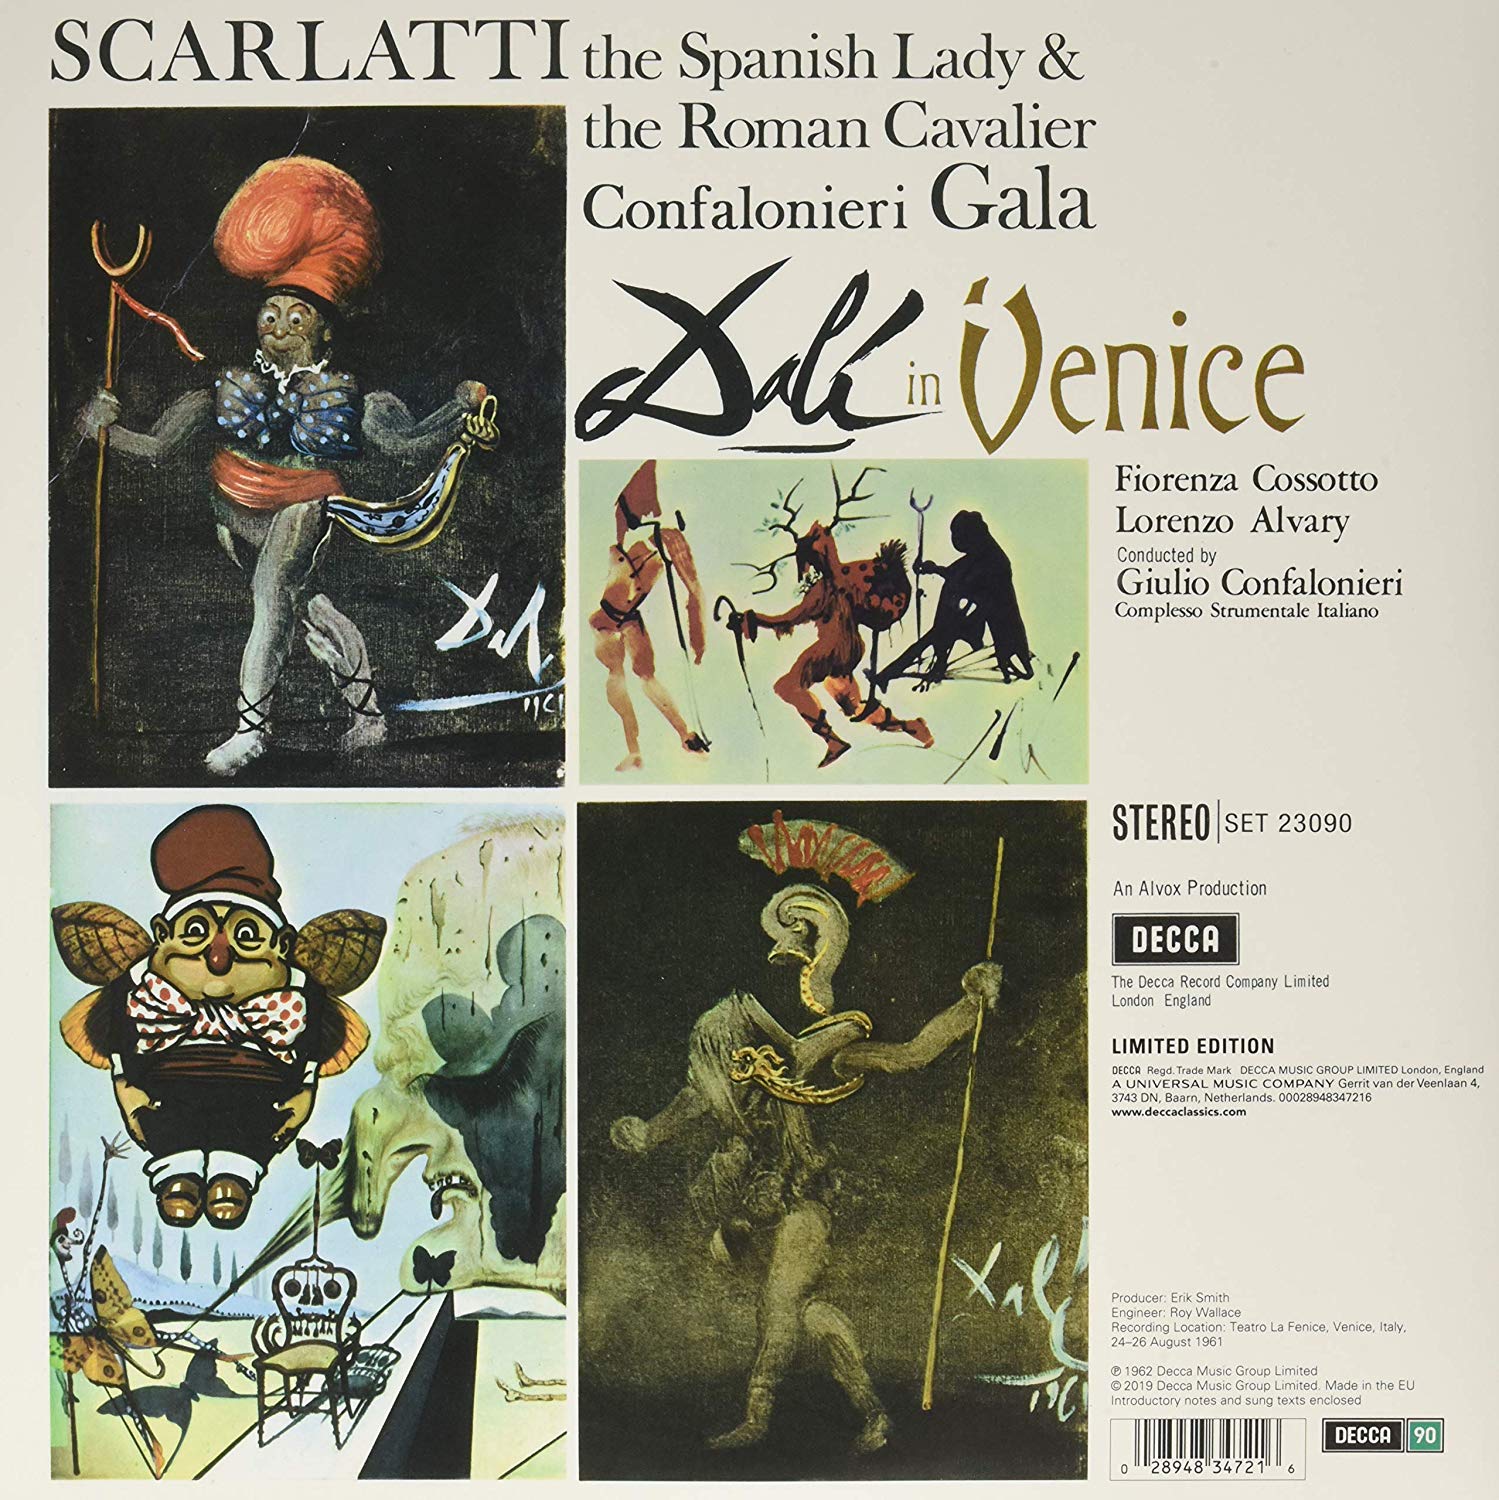 Fiorenza Cossotto 알레산드로 스카를라티: 스페인 여인과 로마기사 (A. Scarlatti: The Spanish Lady and the Roman Cavalier) [LP]